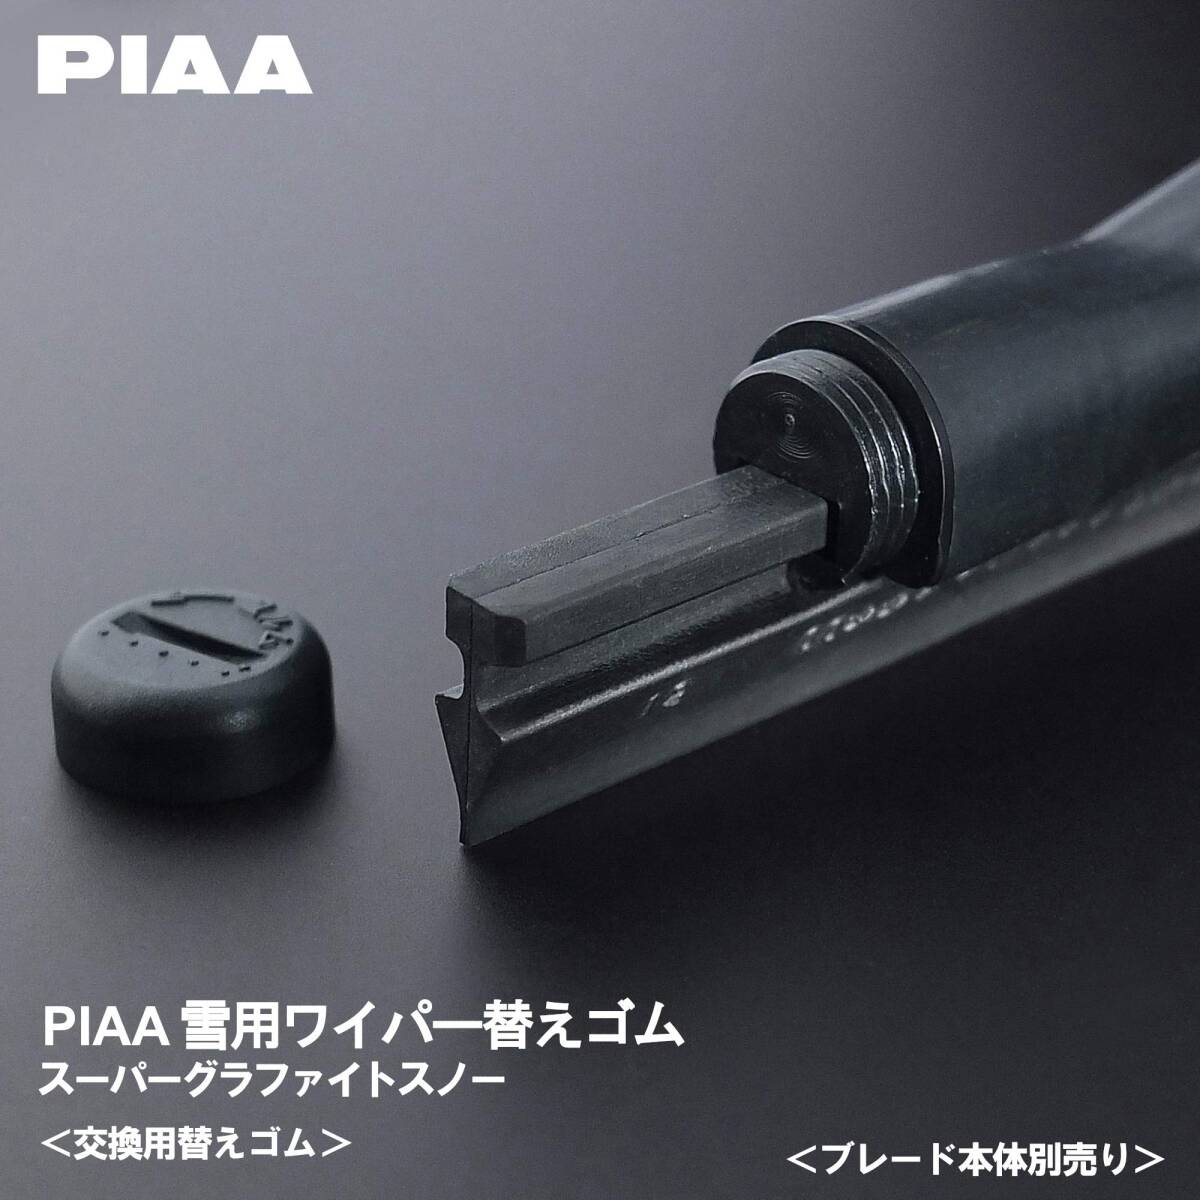 PIAA ワイパー 替えゴム 雪用 550mm スーパーグラファイト グラファイトコーティングゴム 1本入 呼番12 WGR55W_画像3